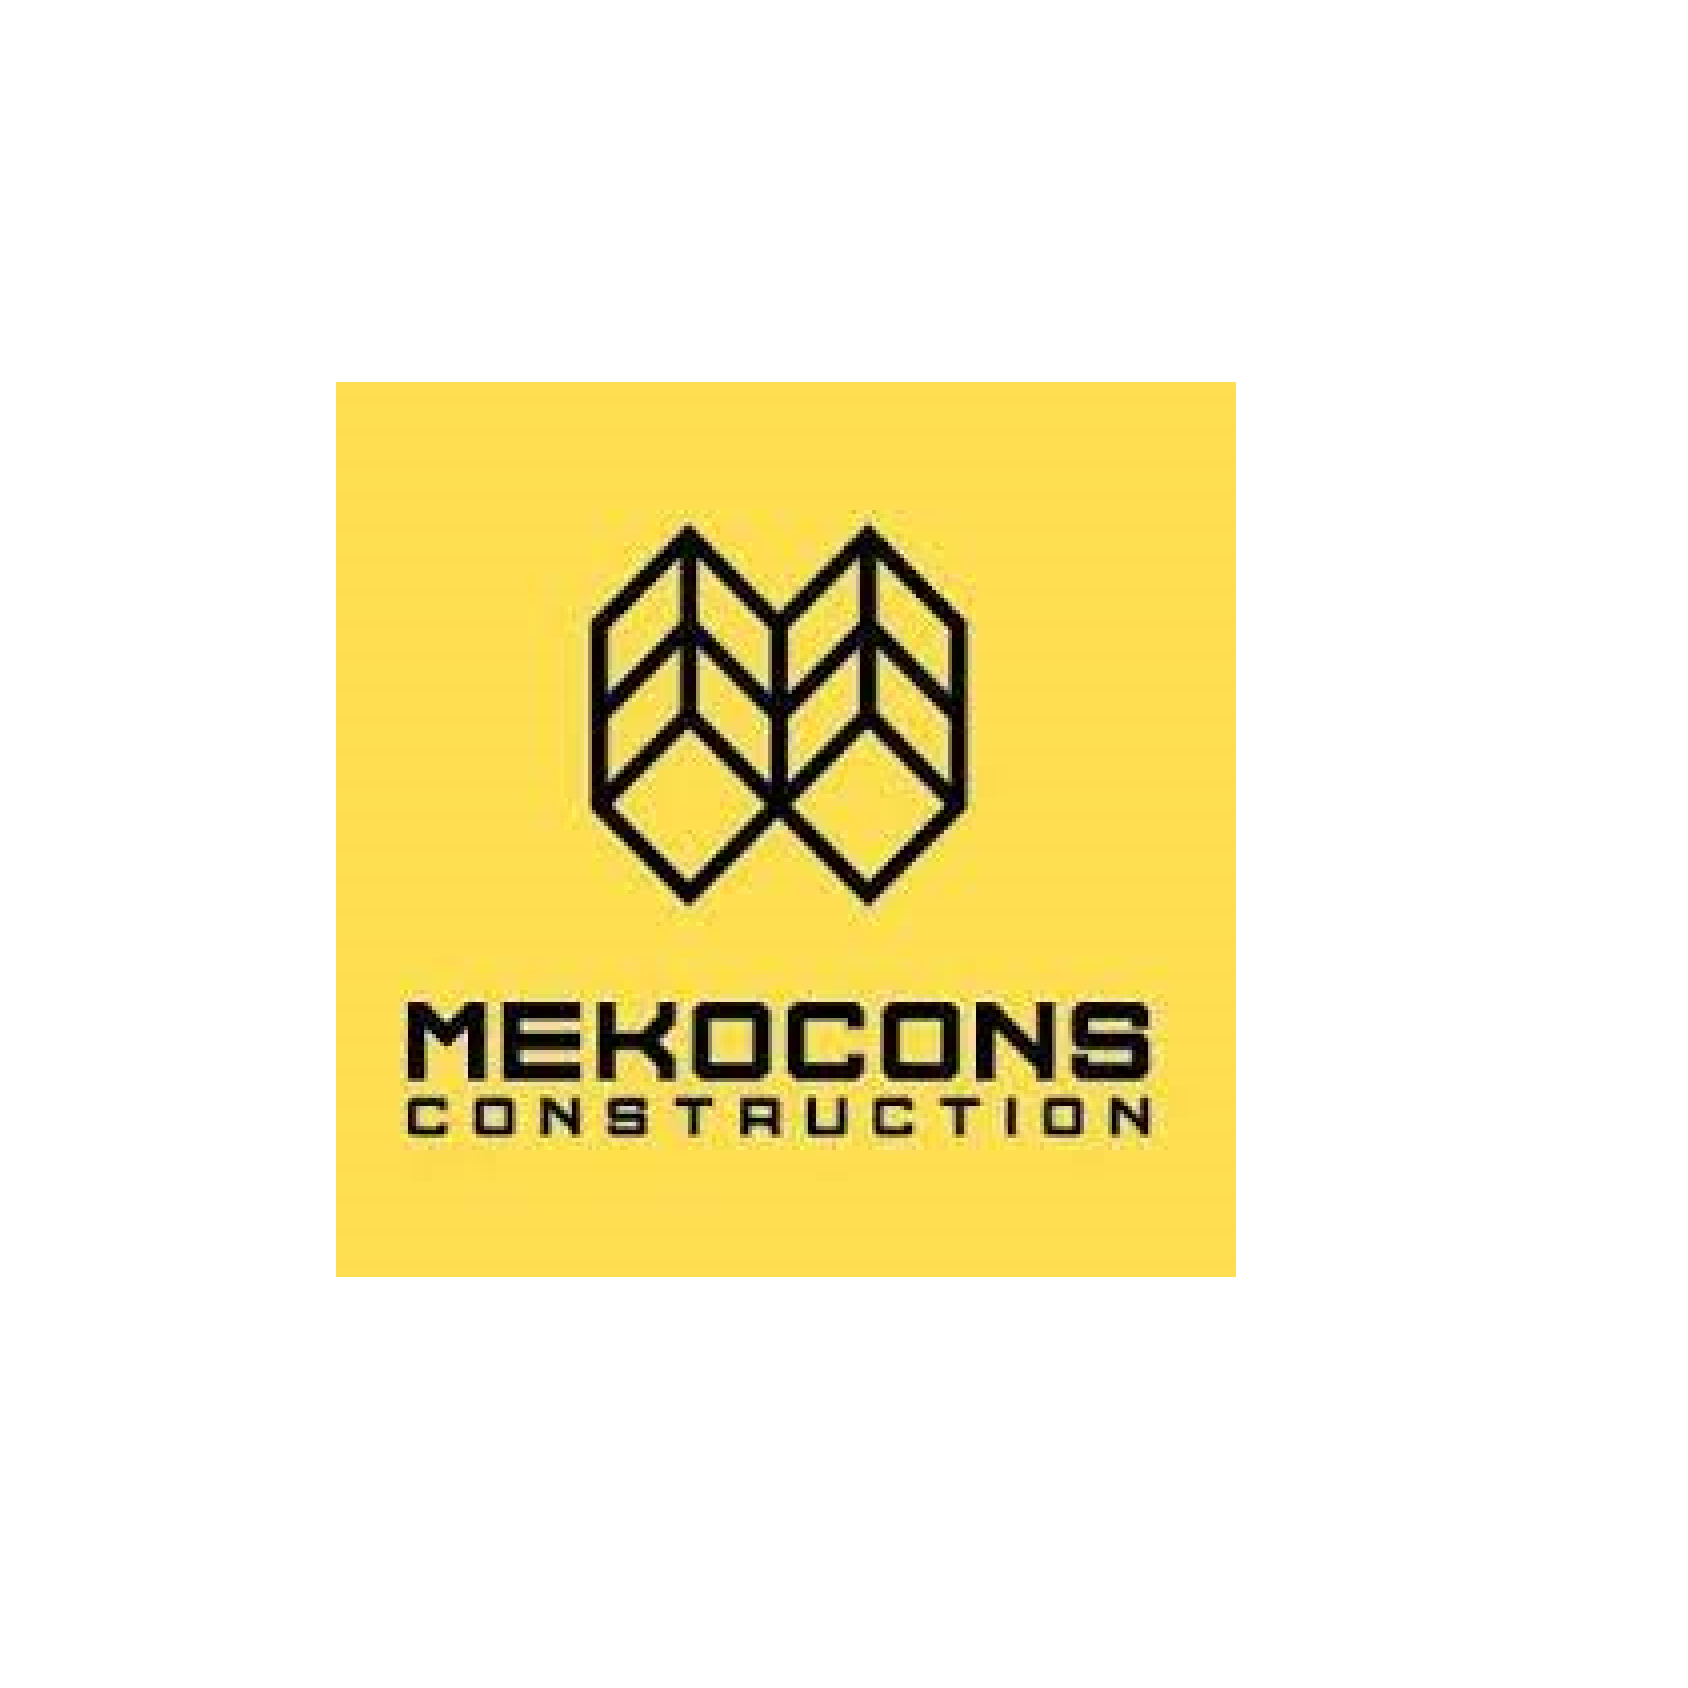 MEKOCONS